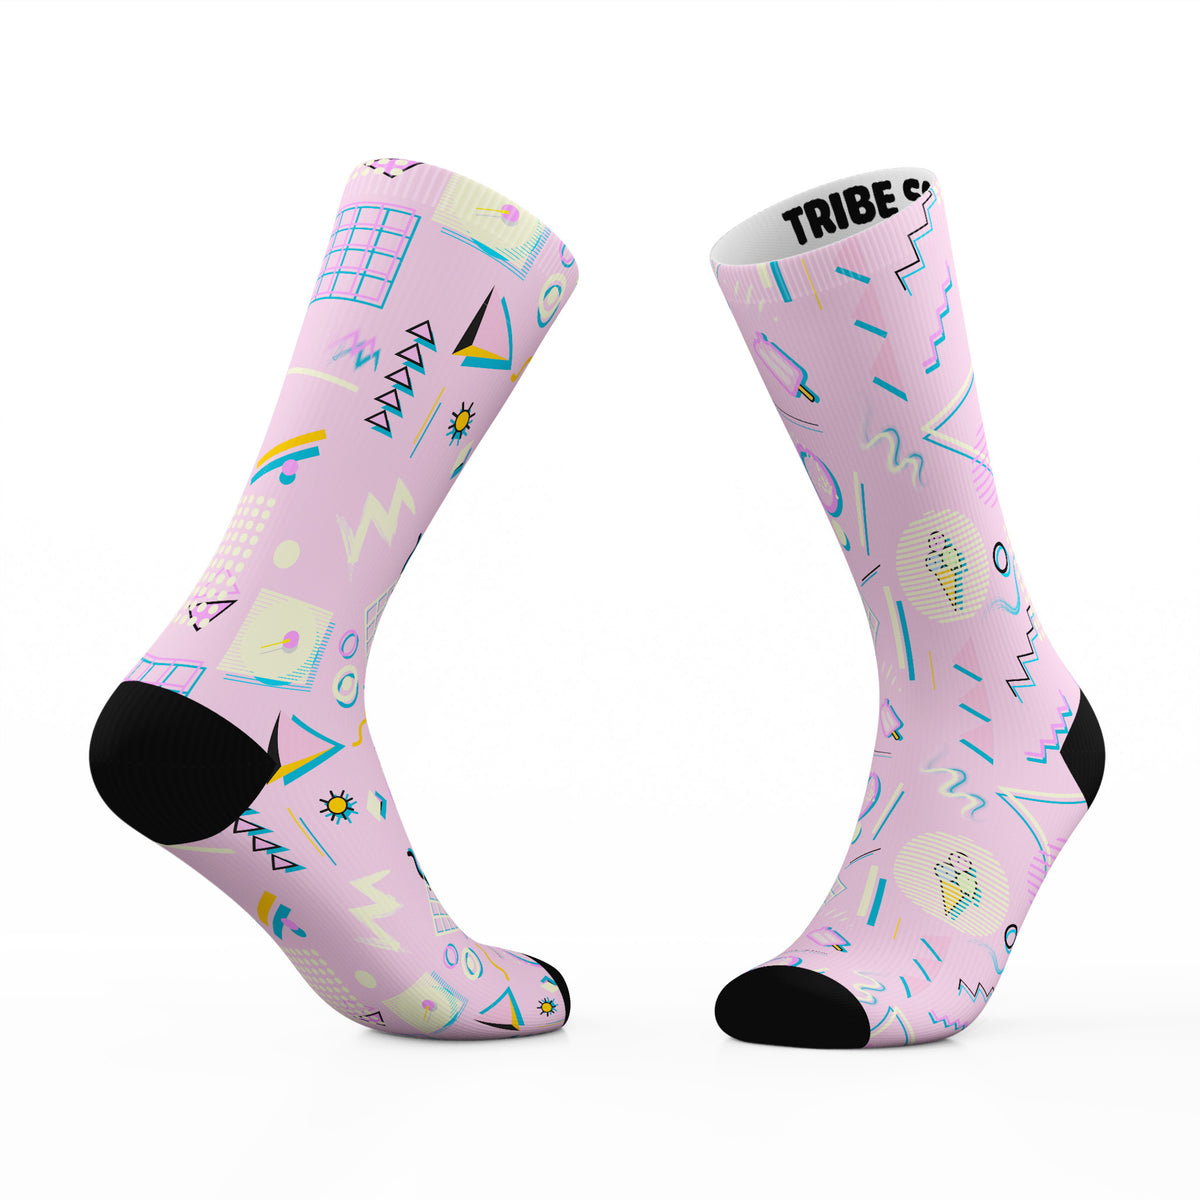 Socks Cream | Socks Tribe Ice 80s